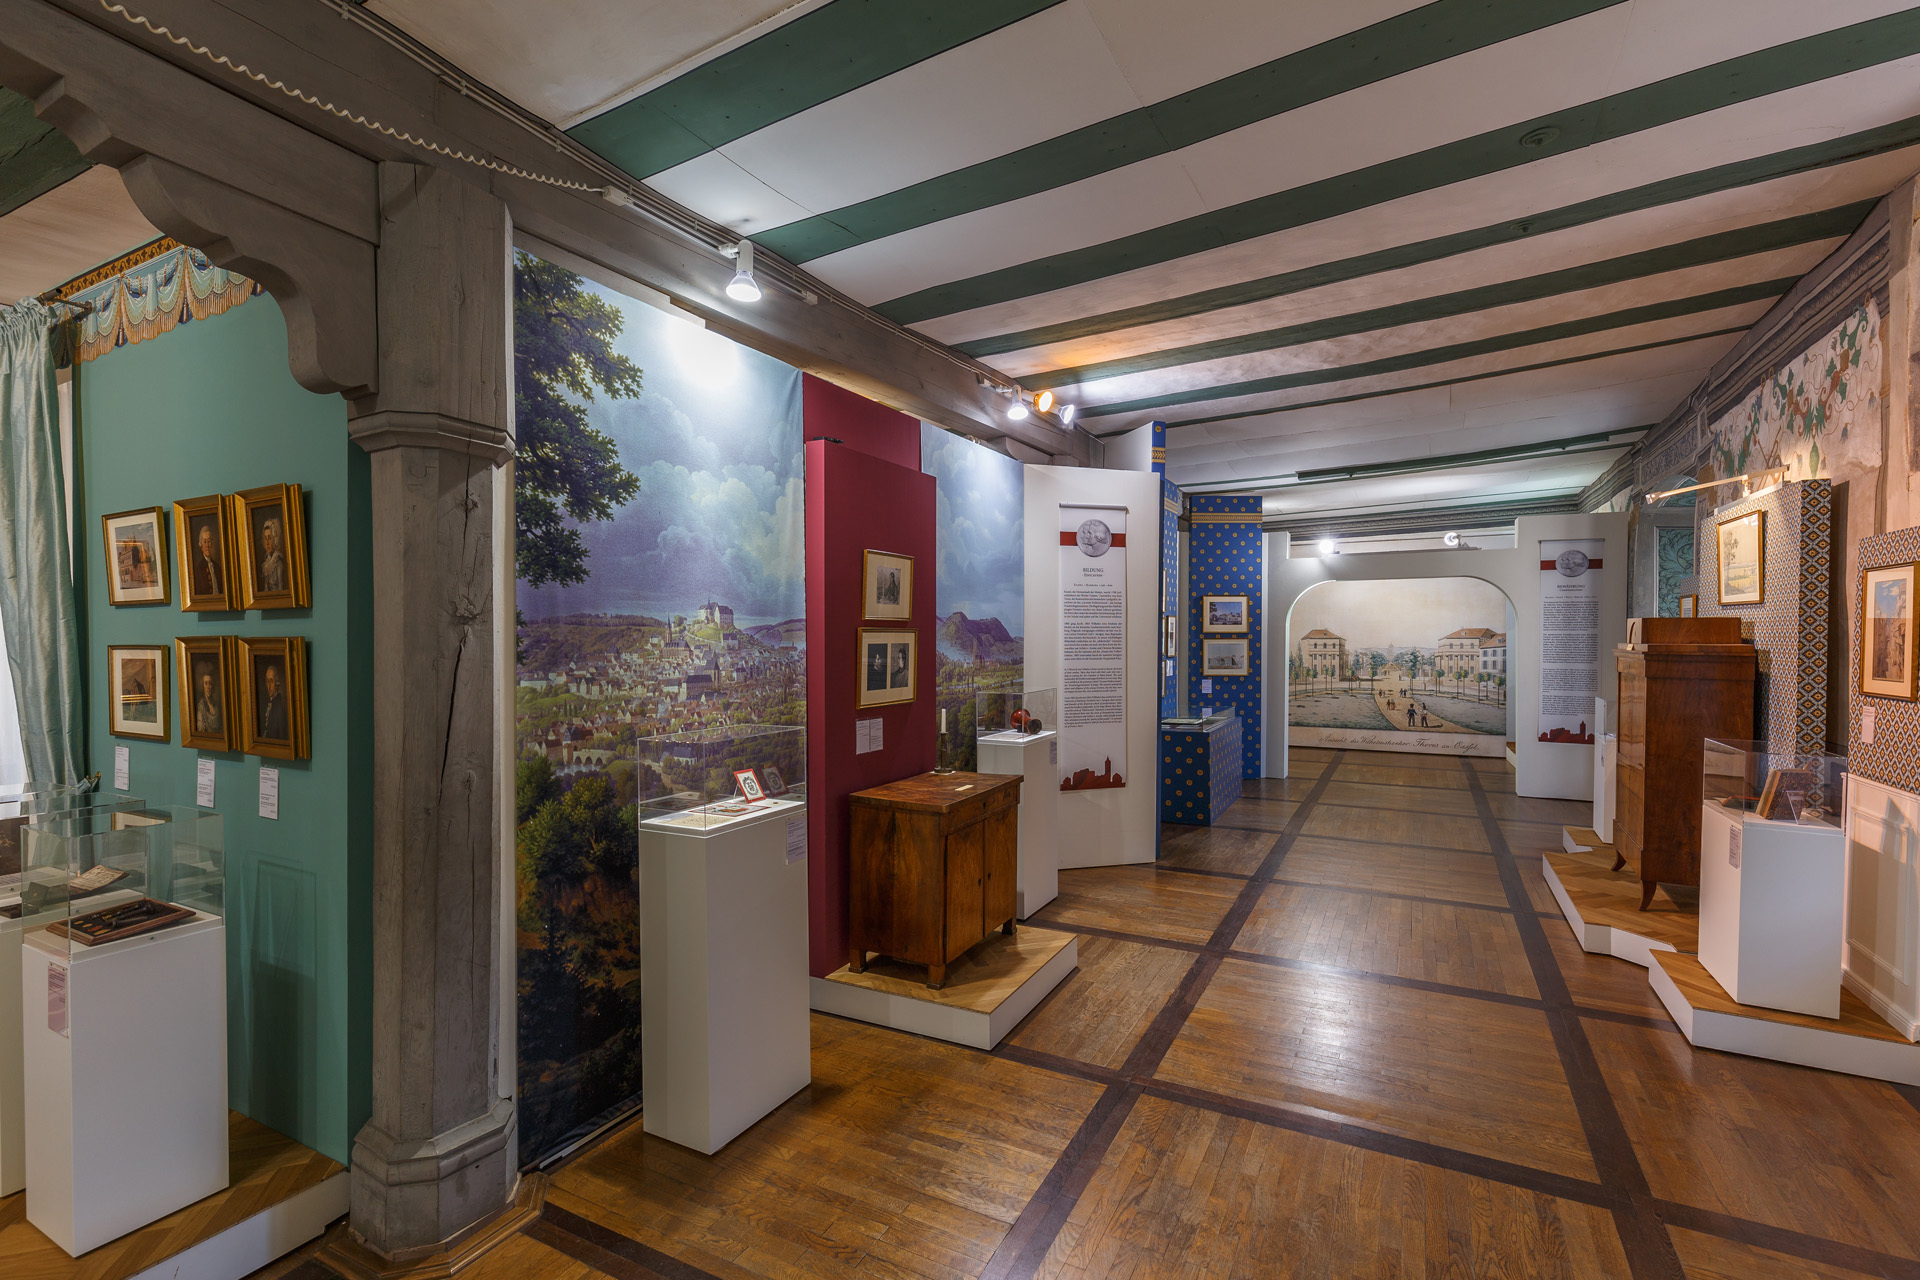 Steinau Palace, Grimm exhibition